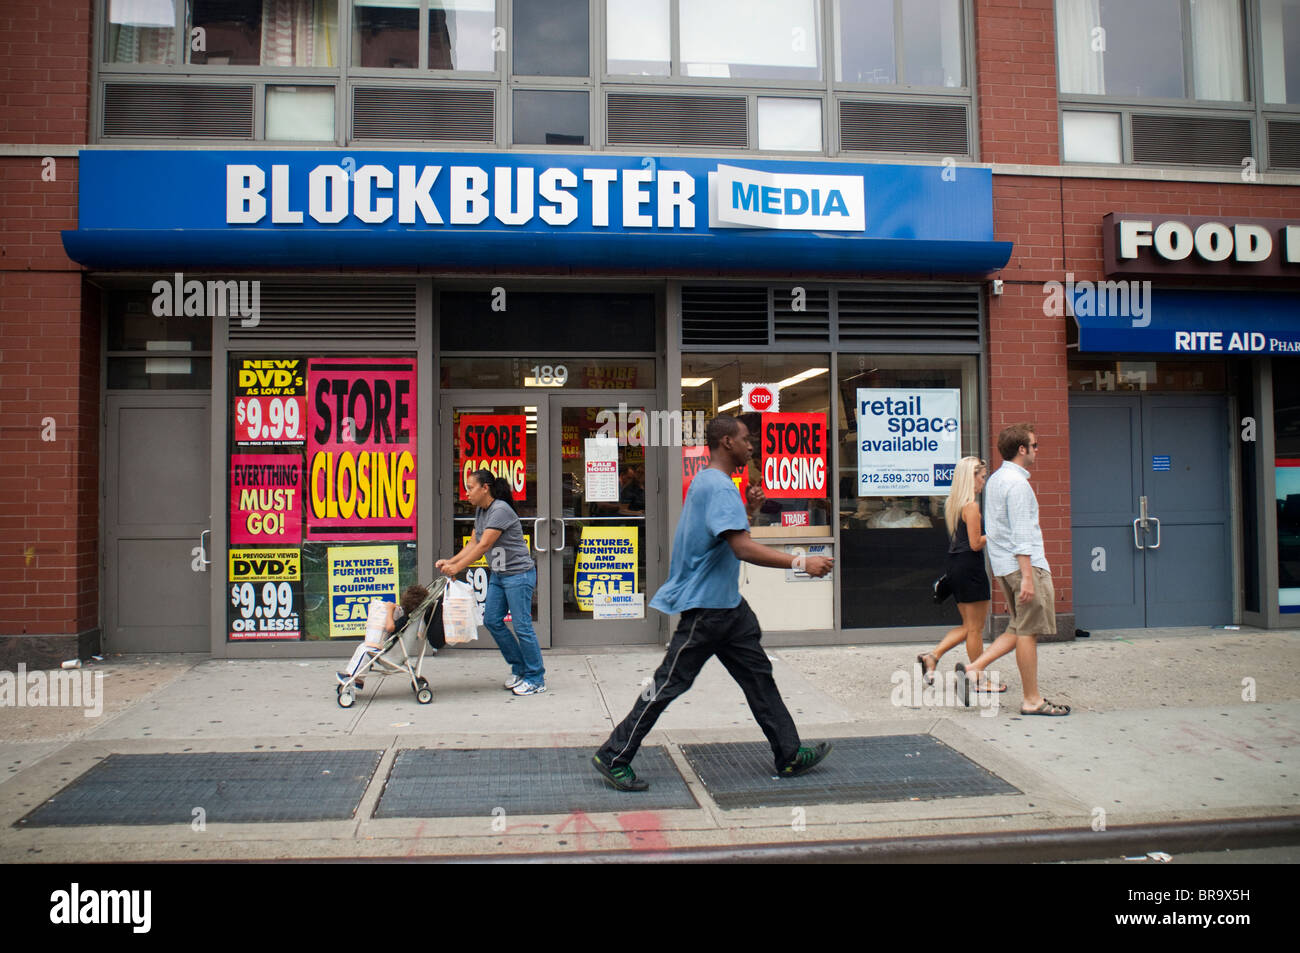 Les panneaux de fermeture de magasin publié dans la fenêtre d'un blockbuster Media store dans le quartier de Chelsea à New York Banque D'Images